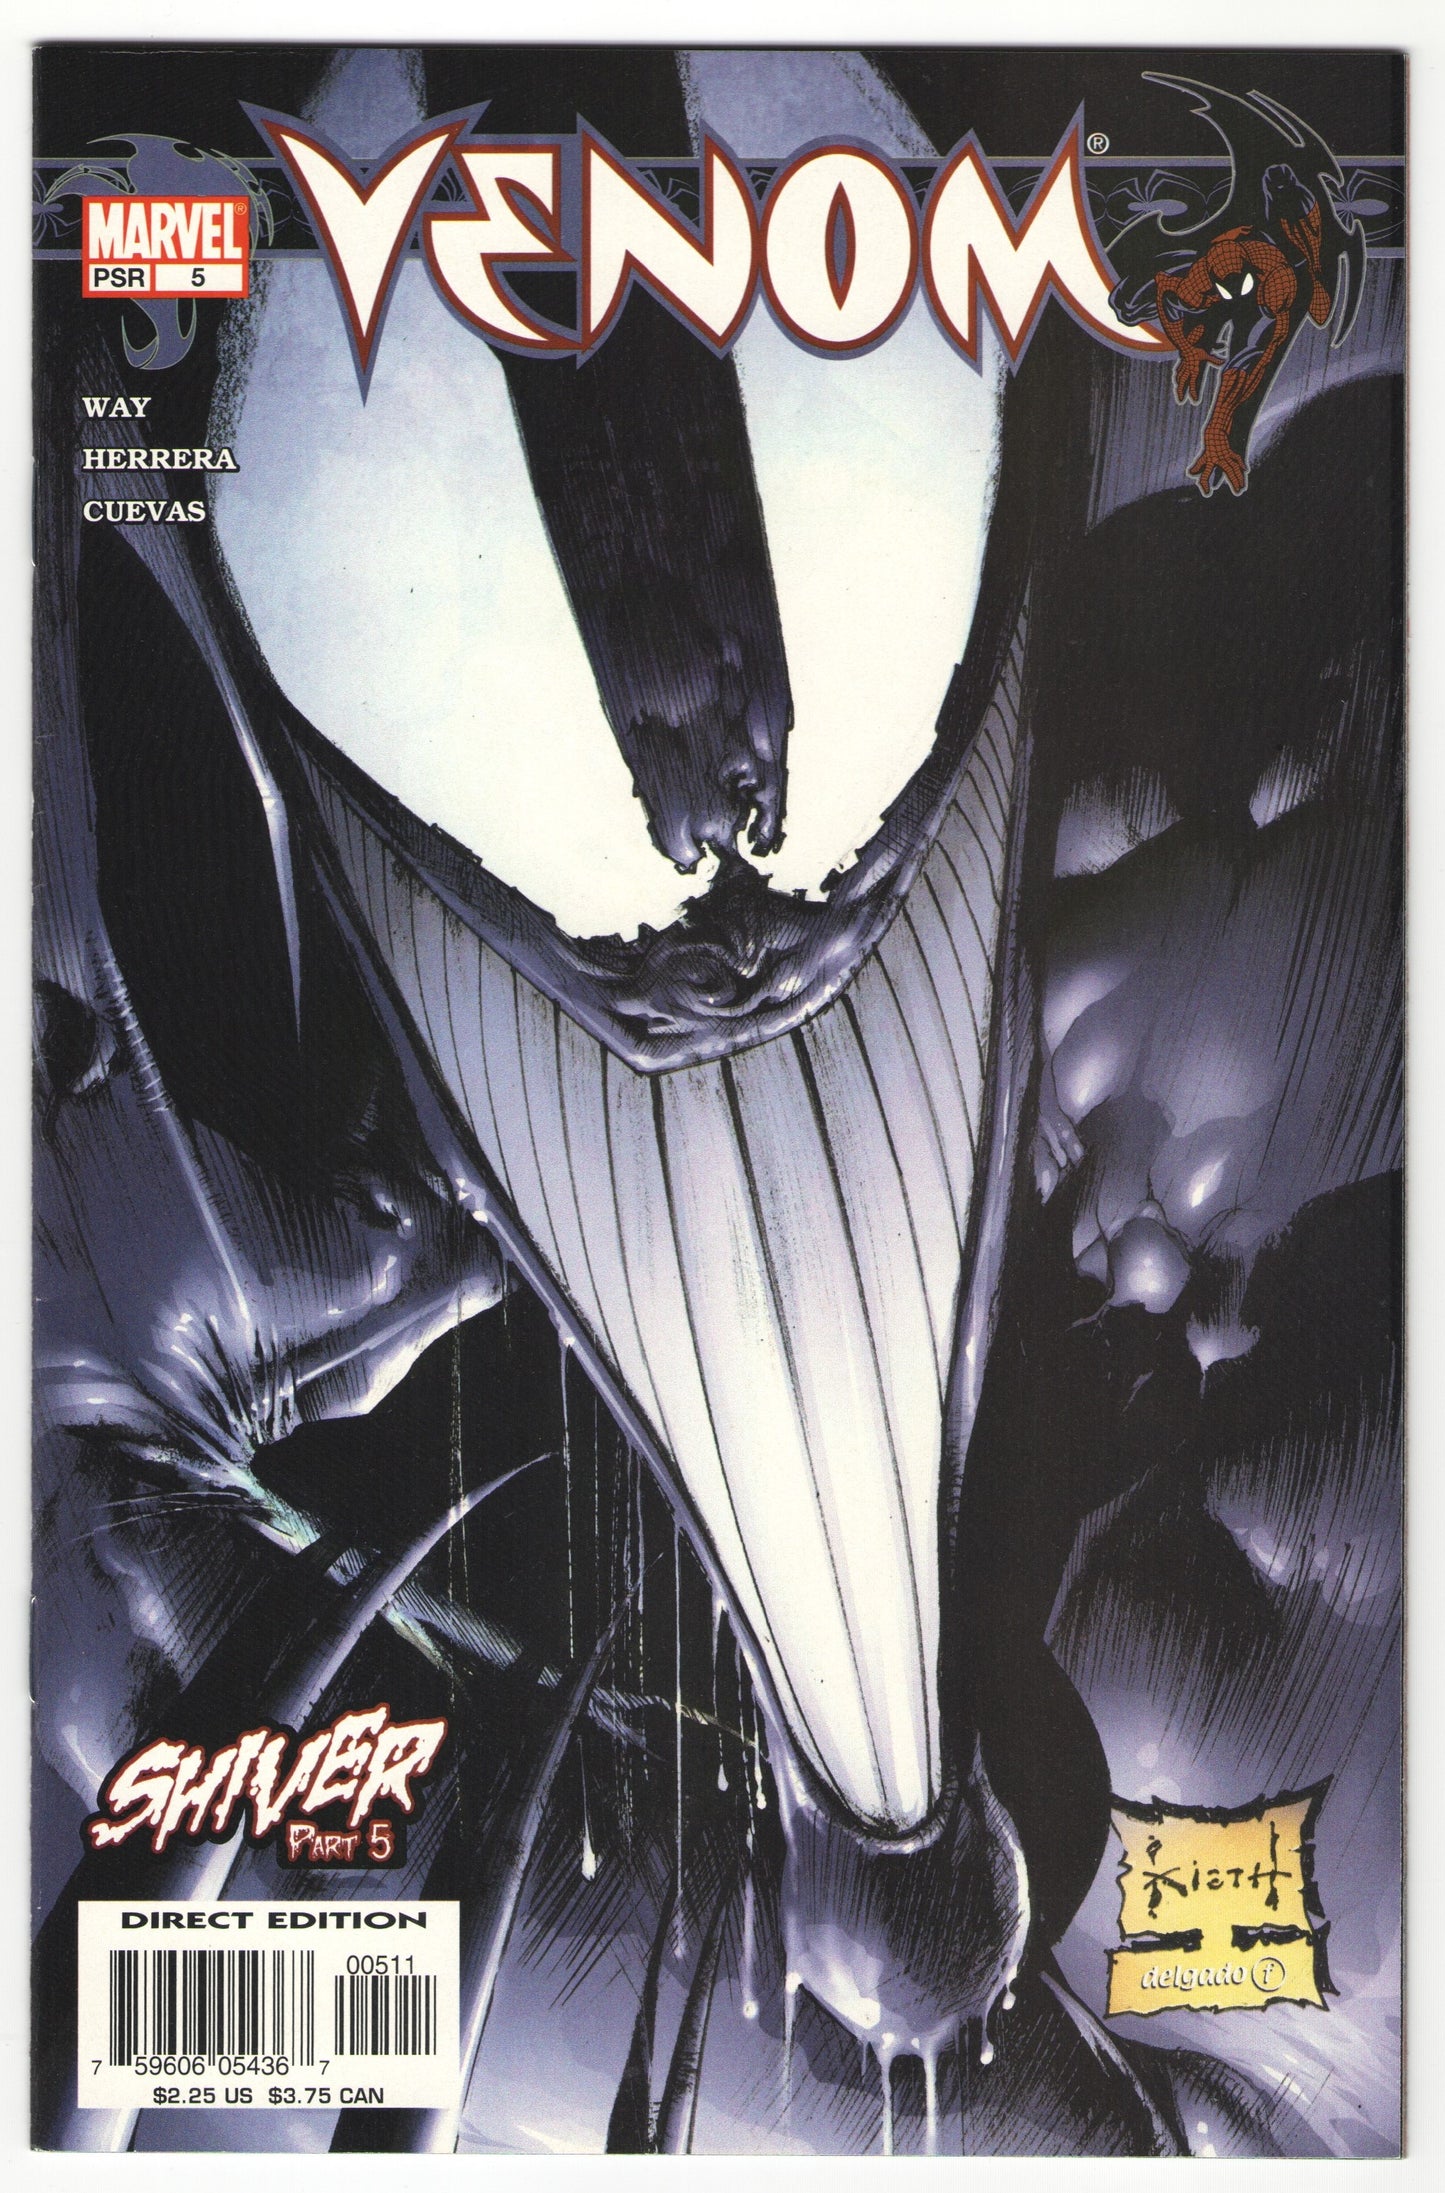 Venom (2003) "Shiver" Story Arc, Issues #1-5